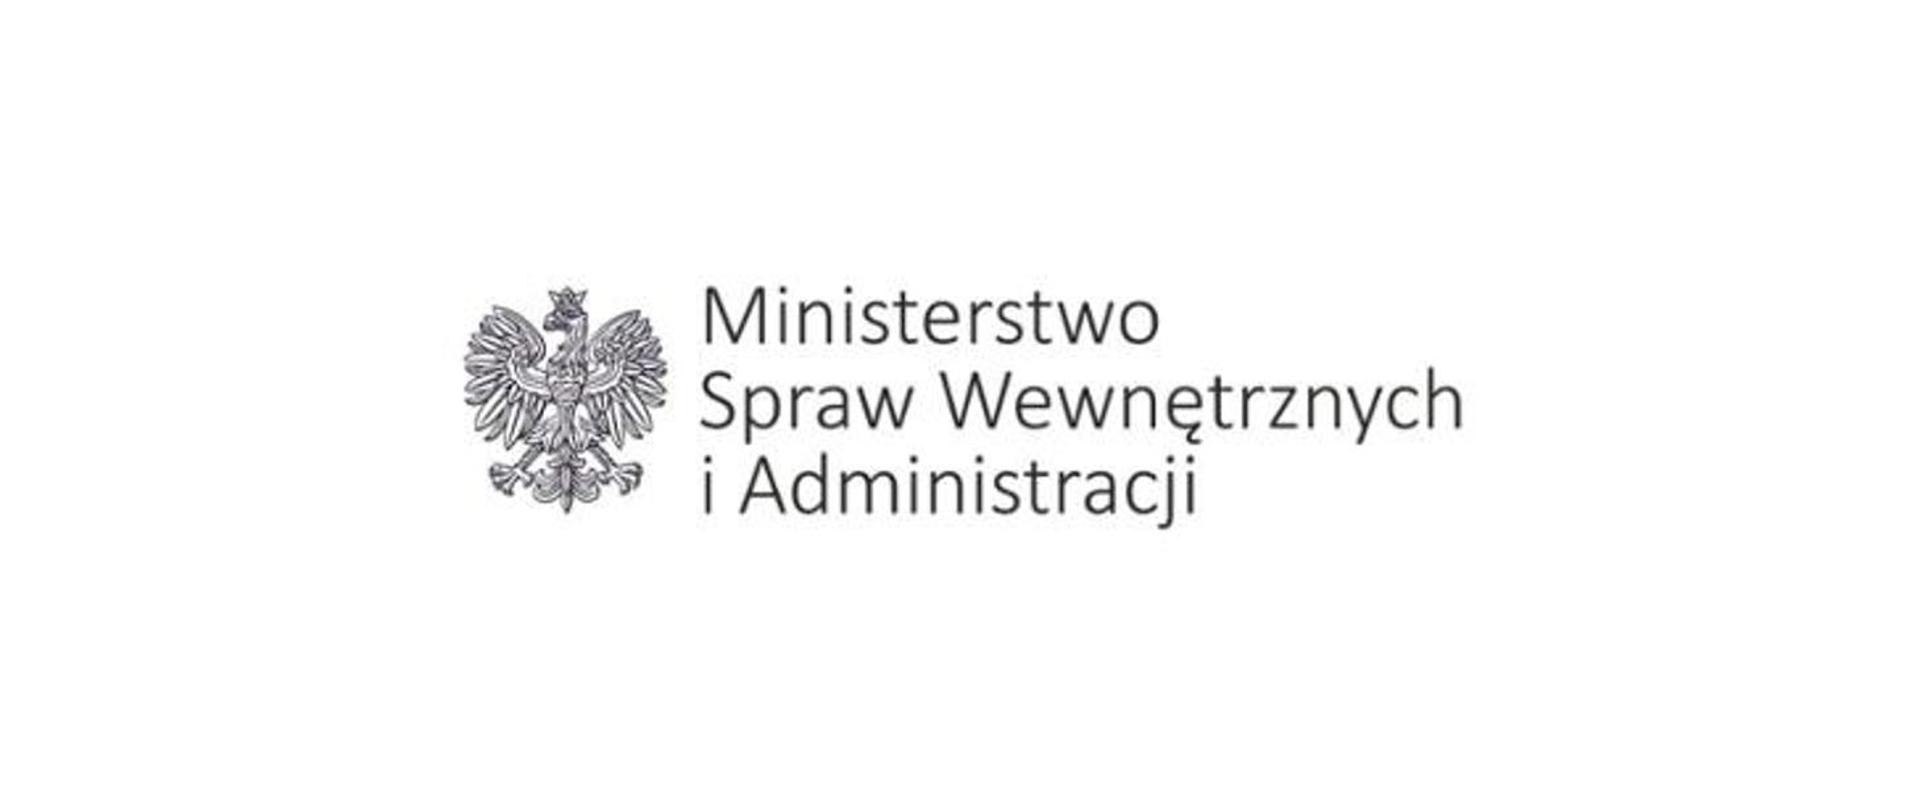 Logo MSWiA. Z prawej strony orła widnieje napis Ministerstwo Spraw Wewnętrznych i Administracji